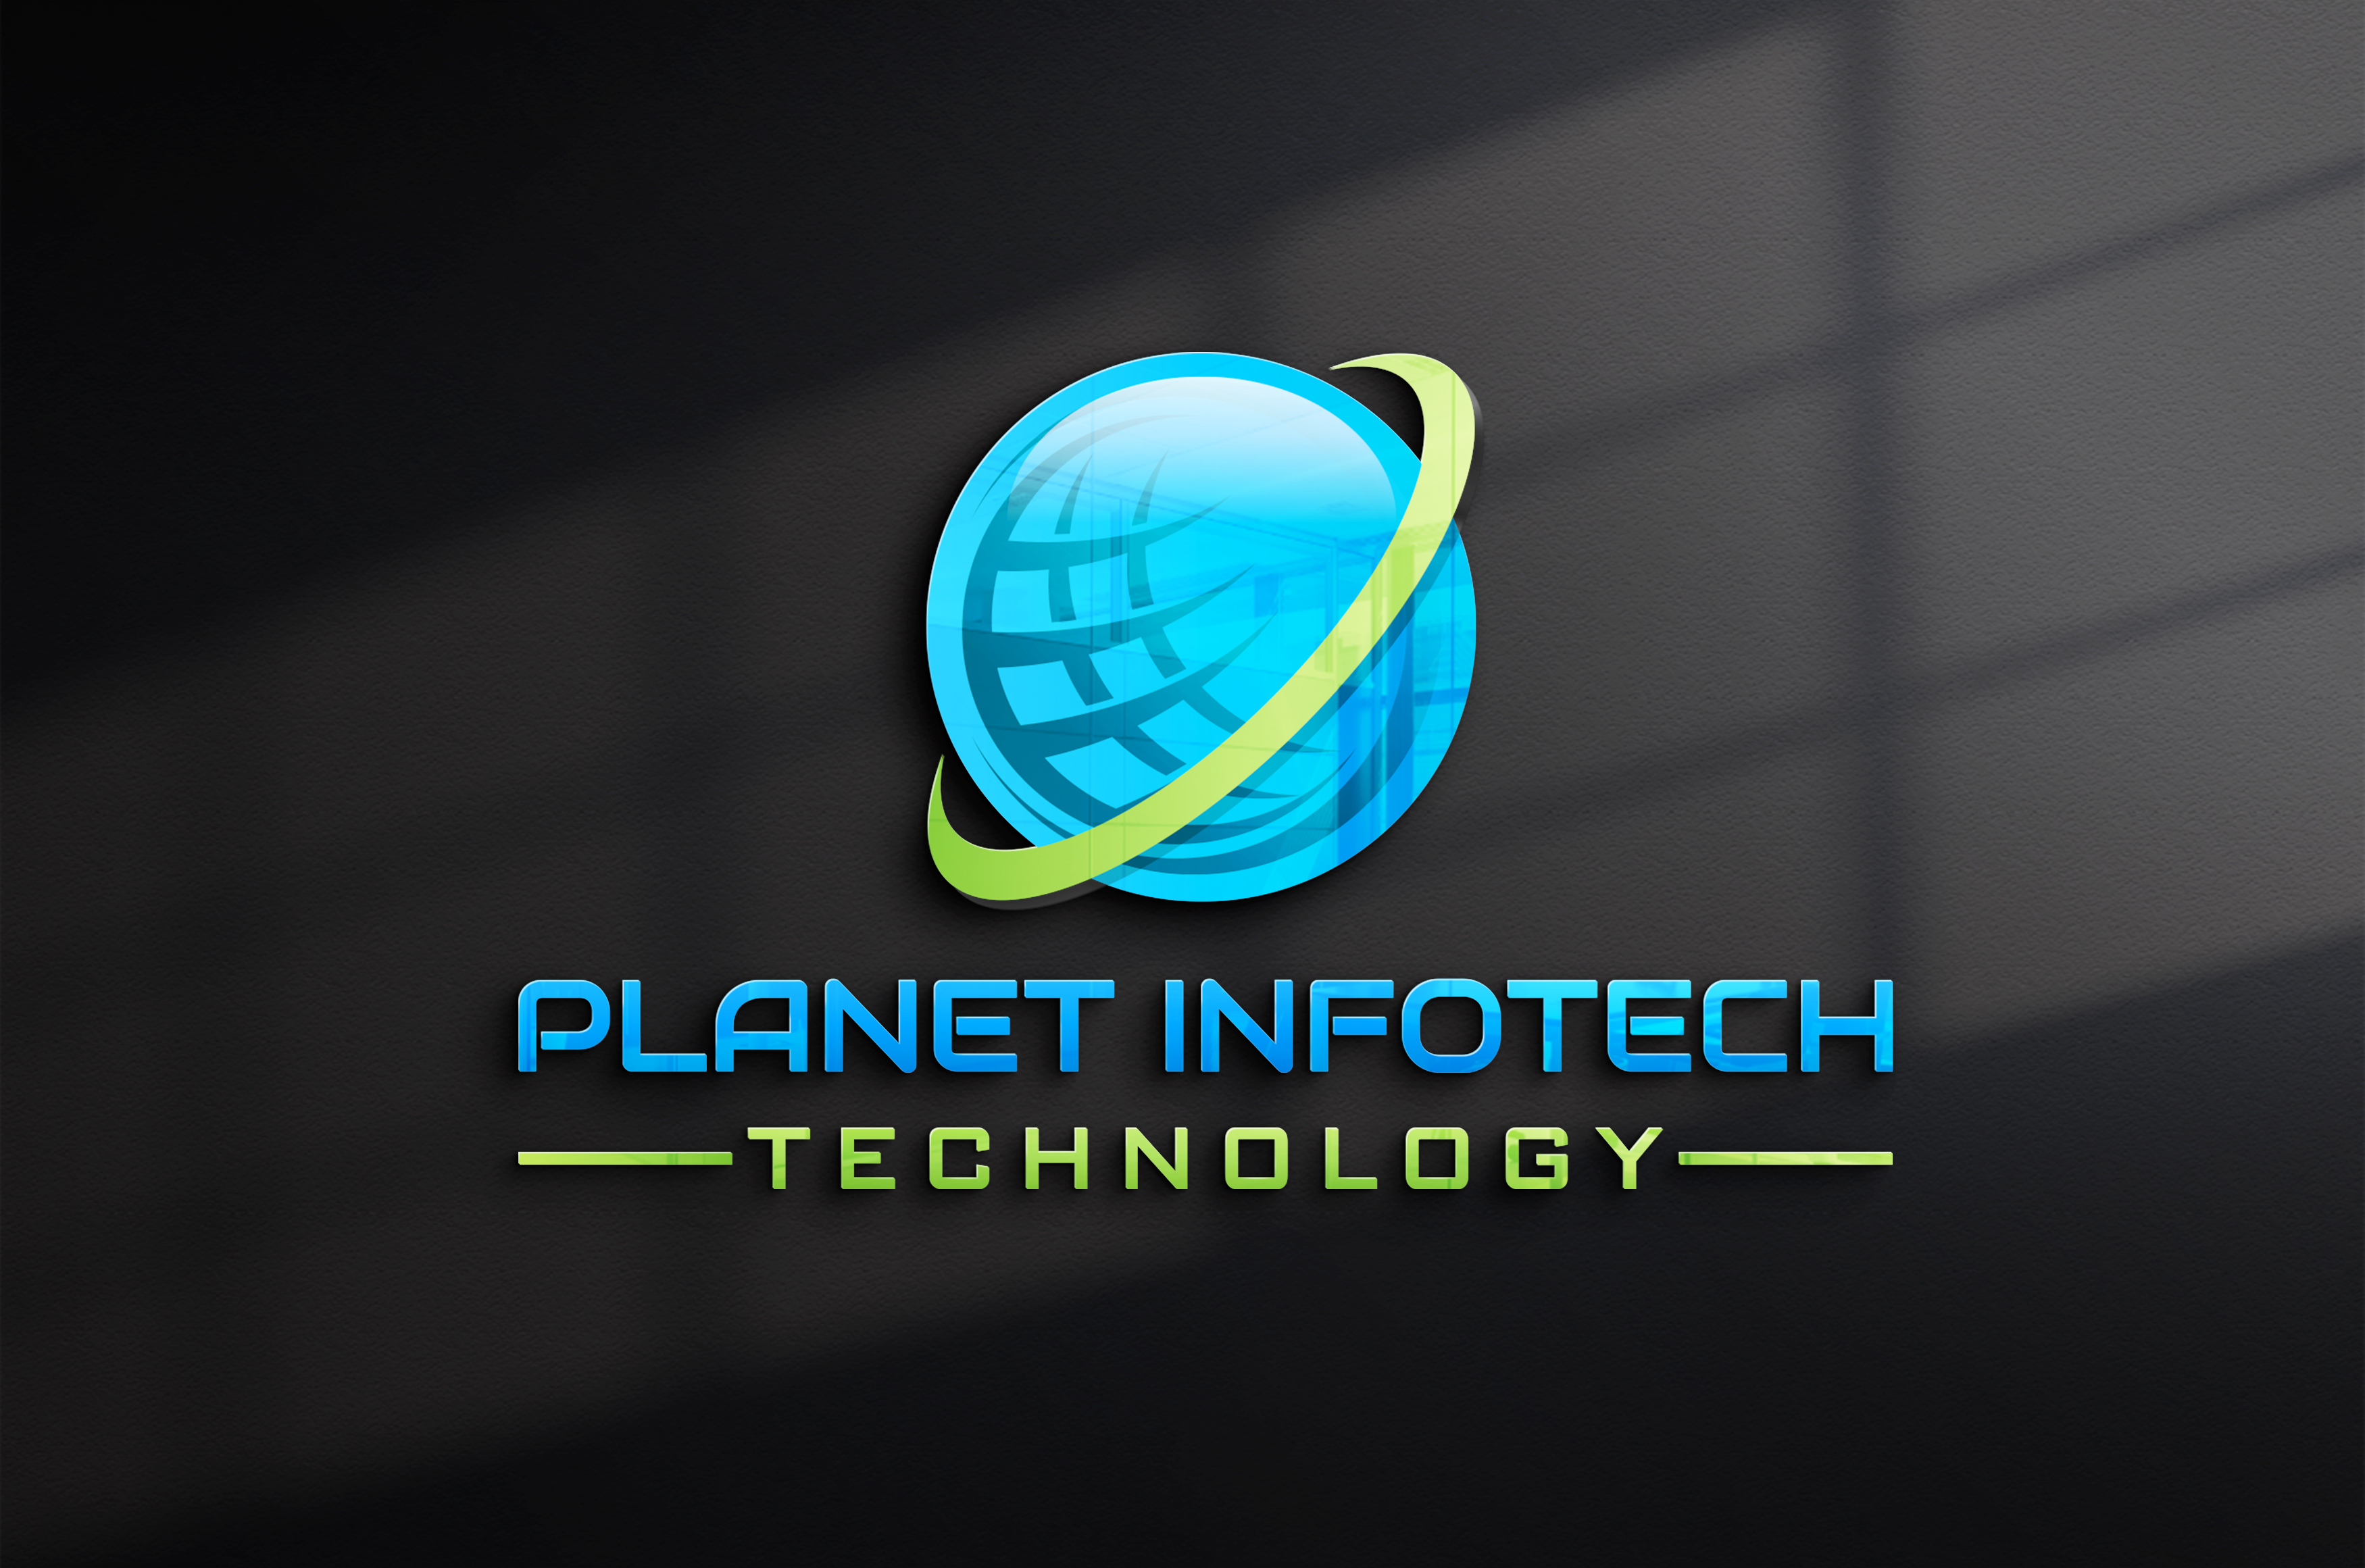 PLANET INFOTECH TECHNOLOGY